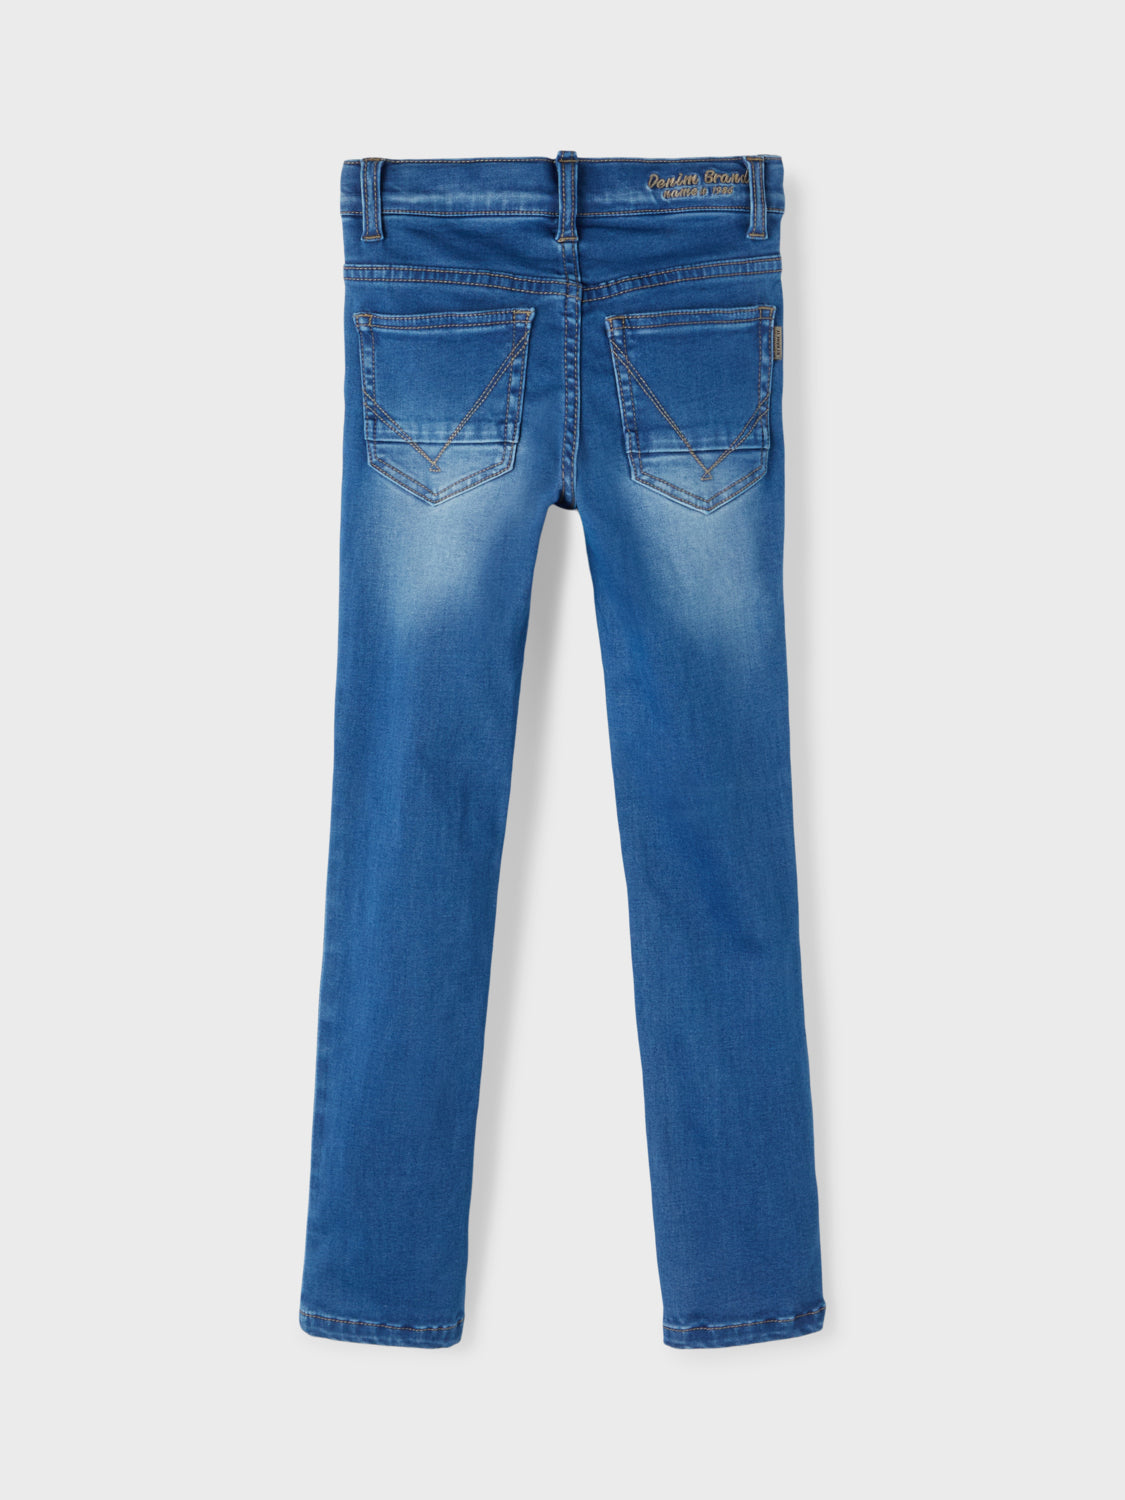 NKMTHEO Jeans - Medium Blue – Name It Denim Bosch Den